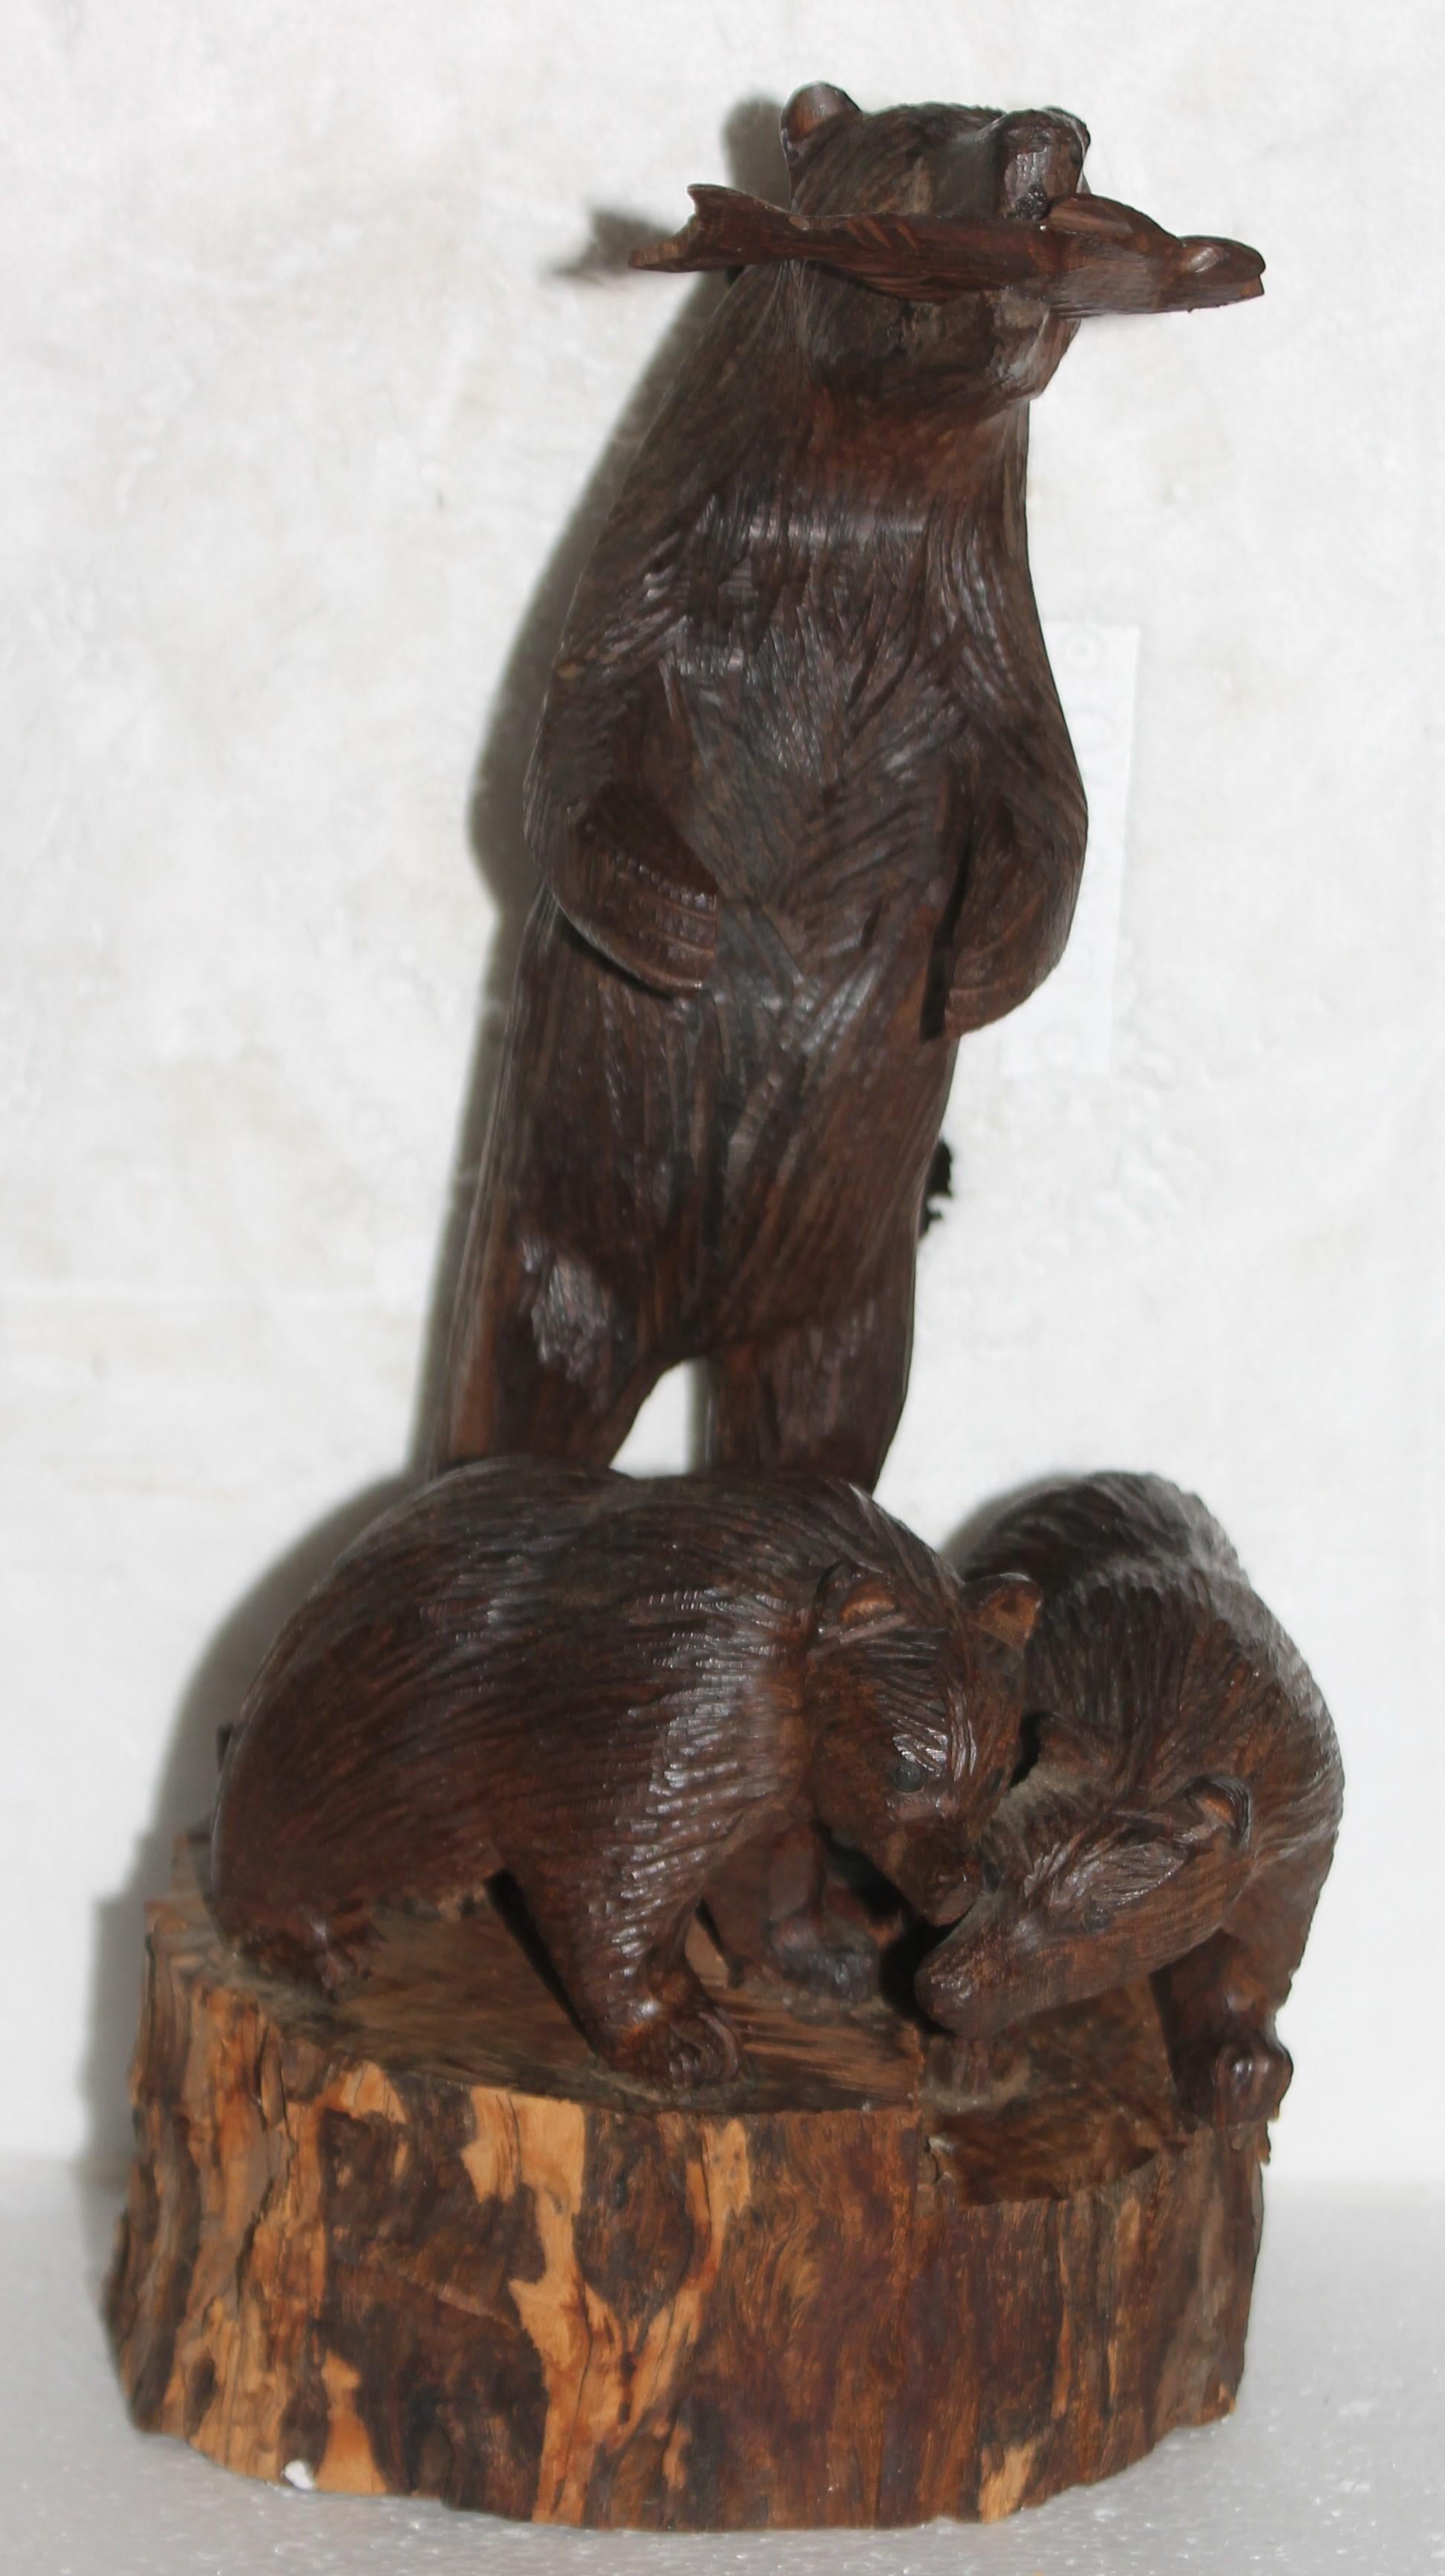 Ces ours sculptés à la main sont étonnants et en très bon état. Ces ours sont sculptés dans une seule pièce de bois ou un seul rondin. Le fond est une planche de bois. Le grand ours a un poisson en bois sculpté dans la bouche et il y a deux ours